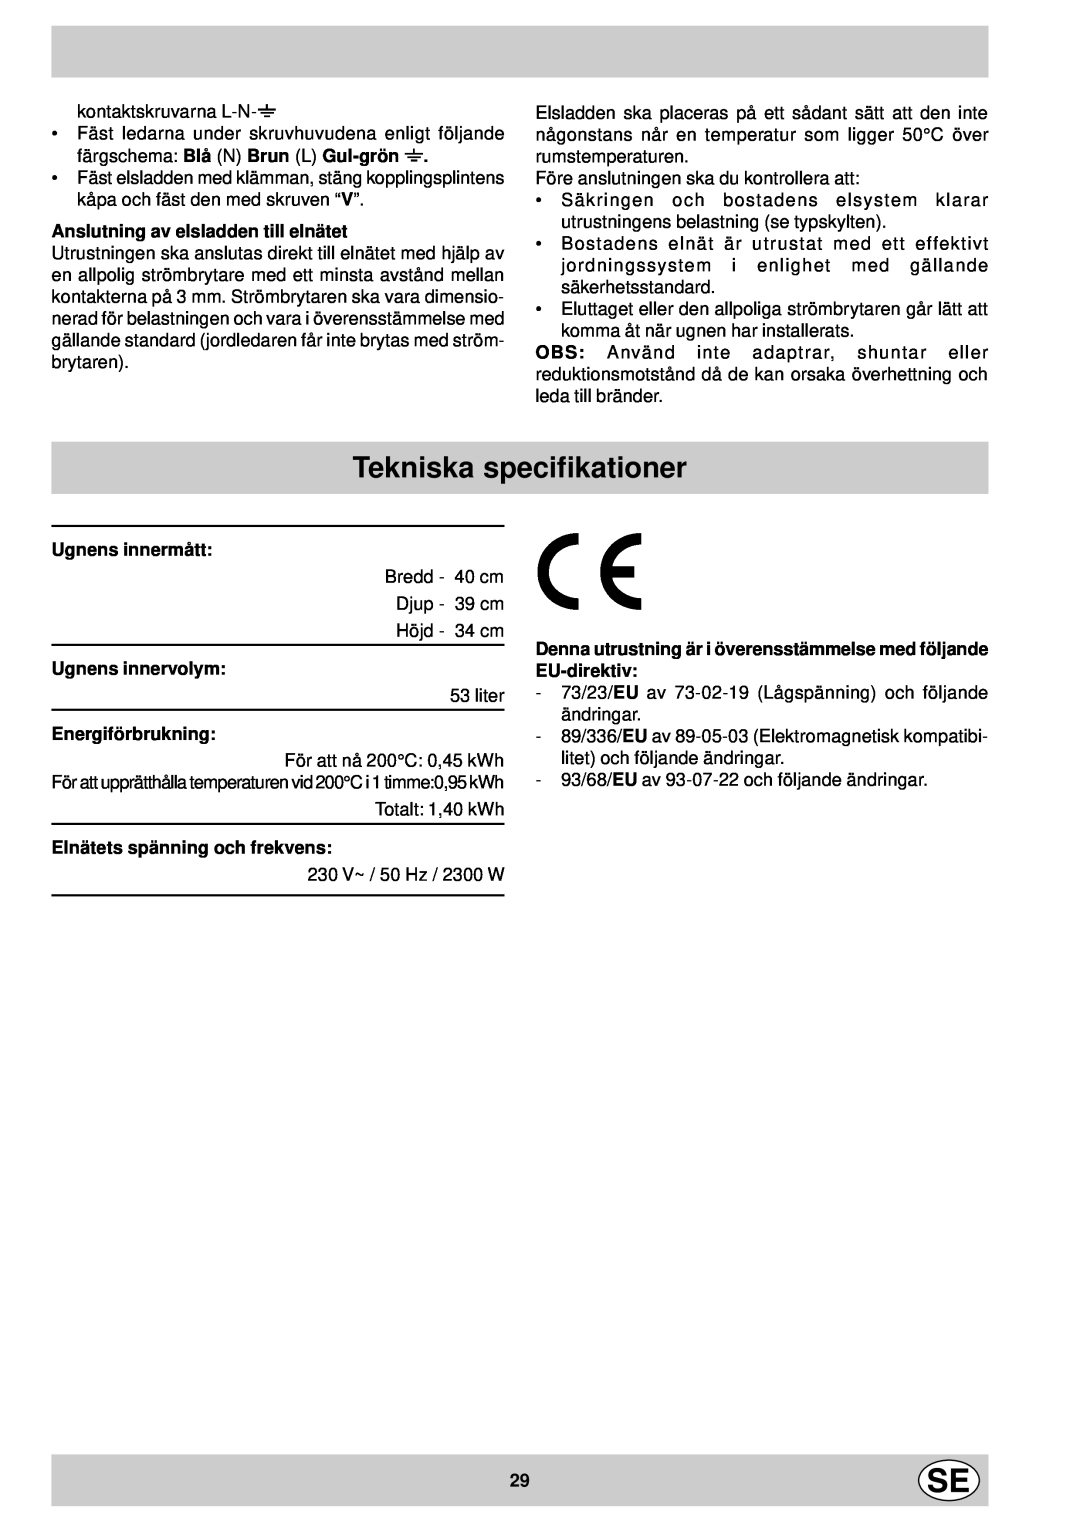 Indesit FM 37K IX DK Tekniska specifikationer, Anslutning av elsladden till elnätet, Ugnens innermått, Ugnens innervolym 